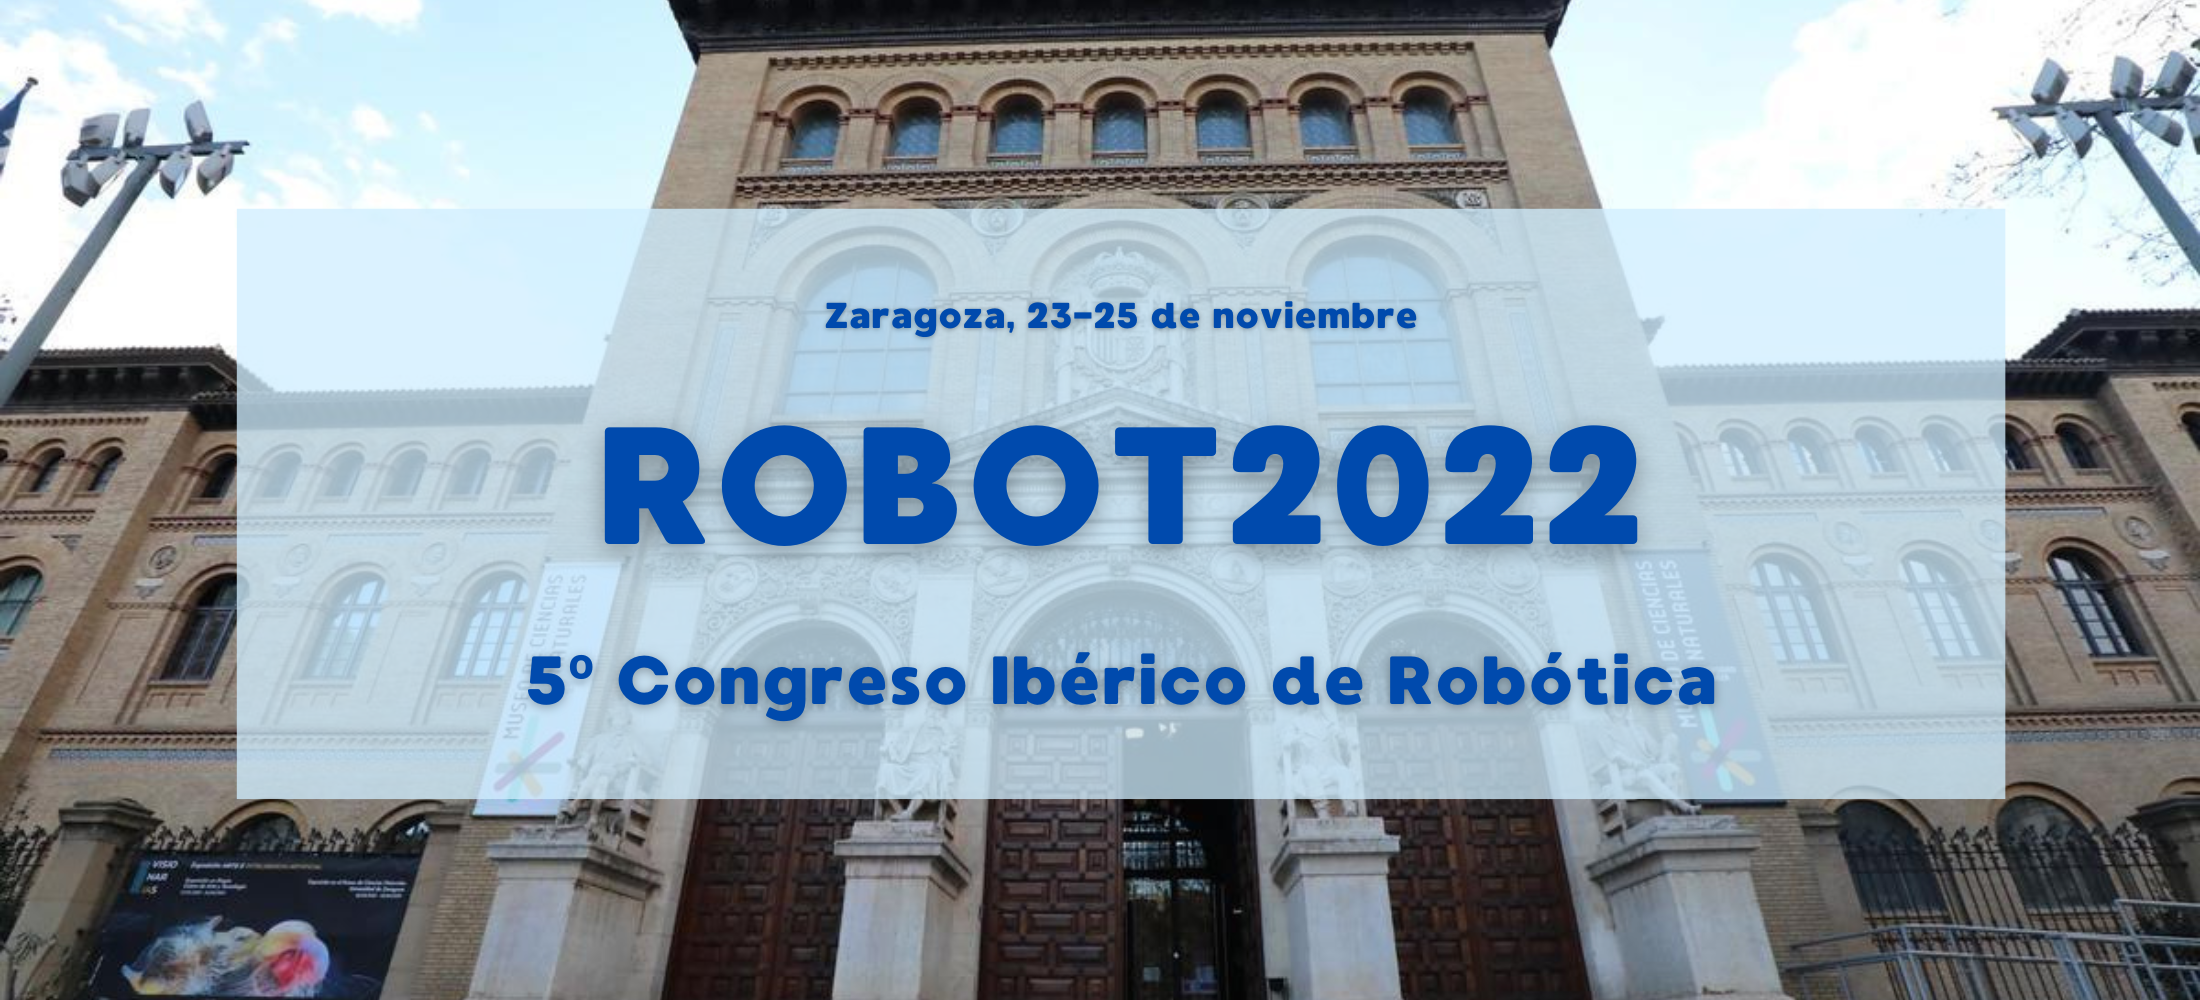 ROBOT2022. 5º Congreso Ibérico de Robótica